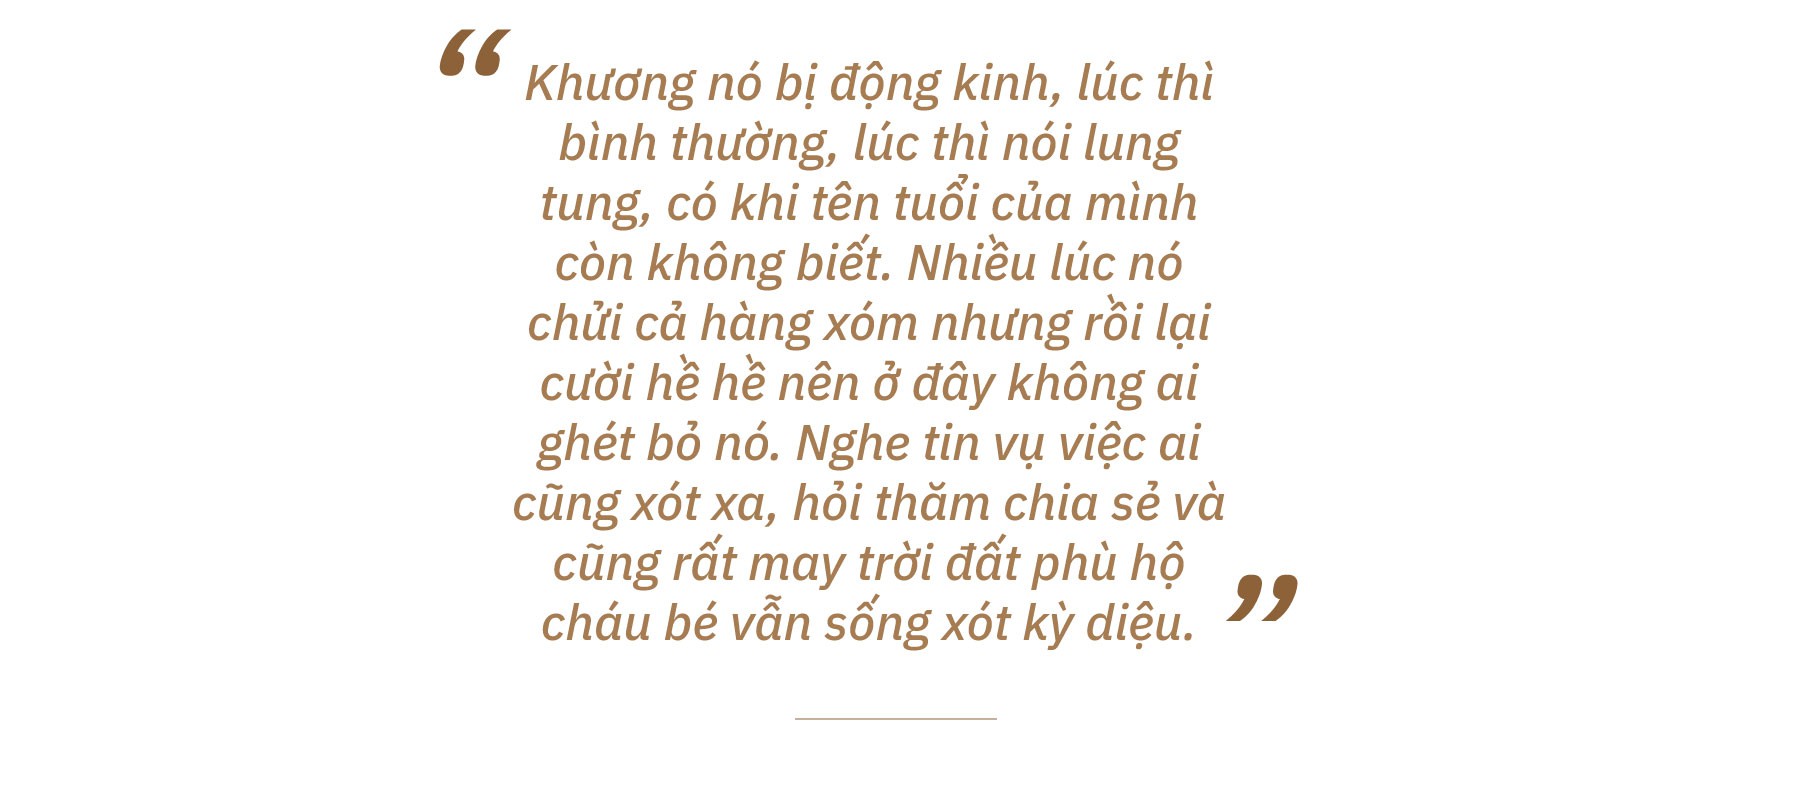 Cuộc đời khốn khổ của người mẹ chôn sống con ở Bình Thuận - Ảnh 10